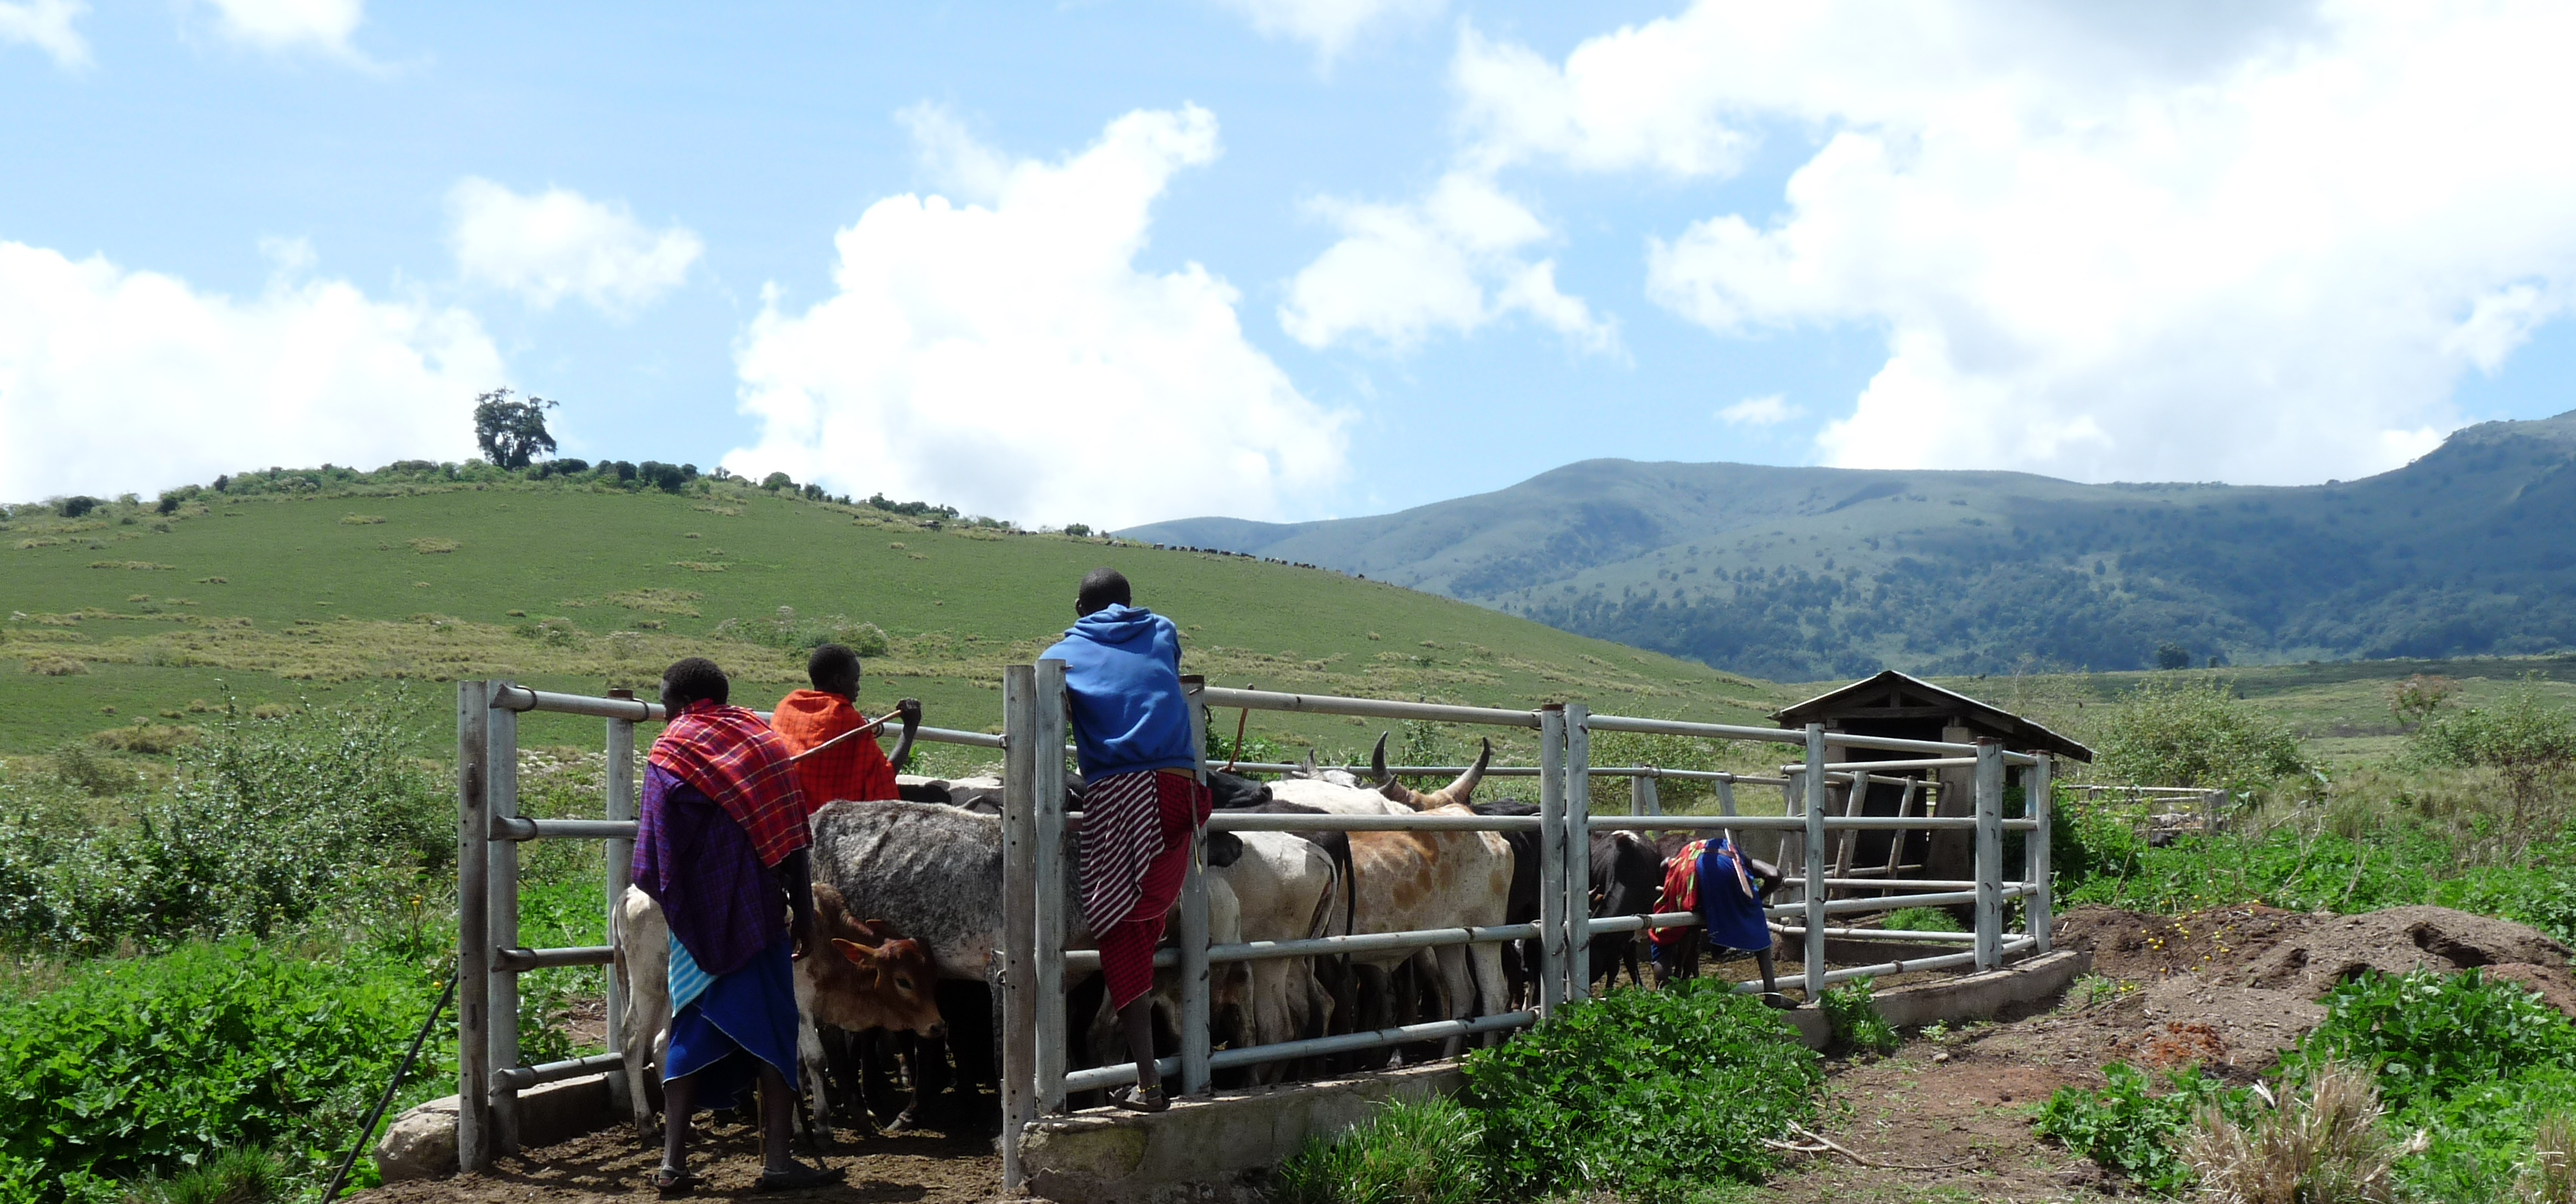 Skadedjur avlägsnas från Maasaistammens boskap i Tanzania. Kor i inhägnad och människor som tar bort skadedjur. 